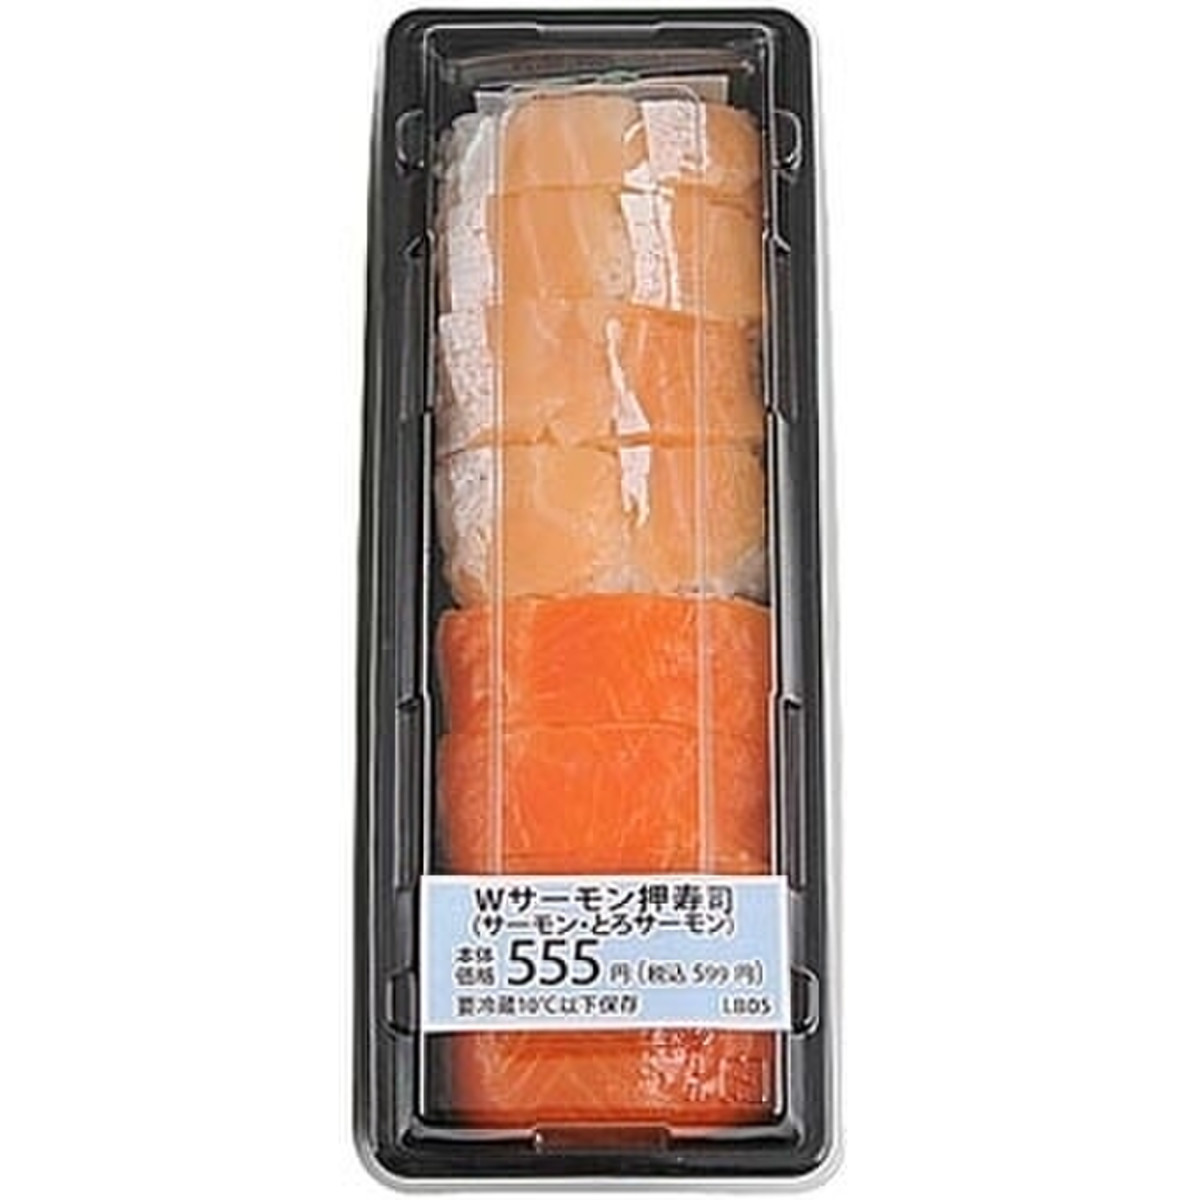 ミニストップ Wサーモン押寿司 8貫 製造終了 のクチコミ 評価 値段 価格情報 もぐナビ